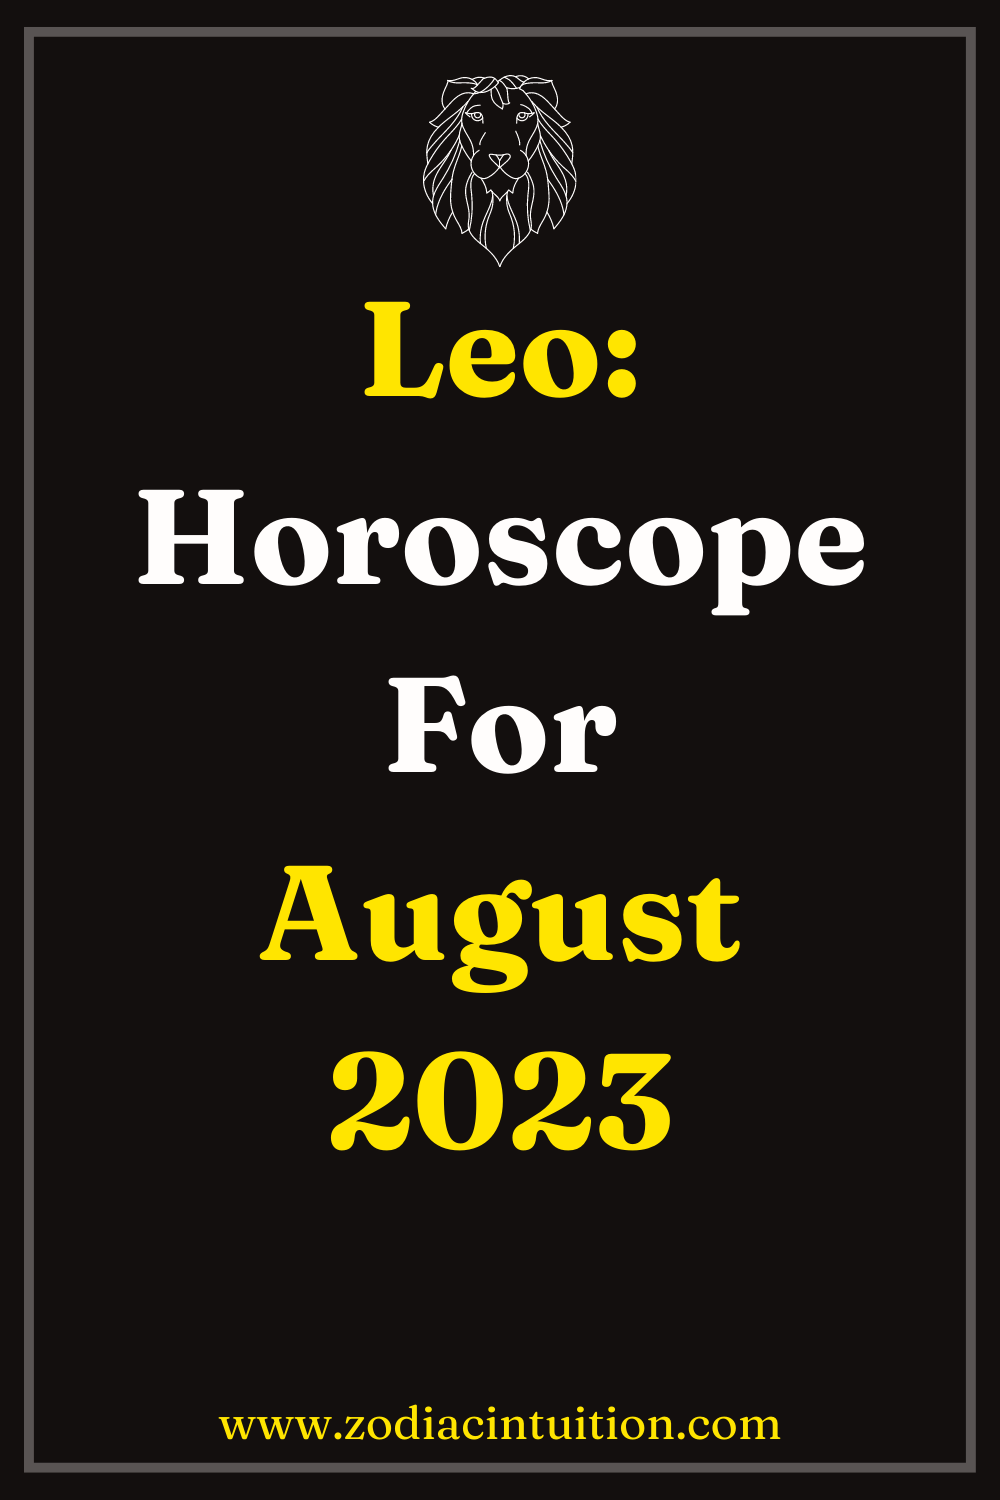 Leo: Horoscope For August 2023